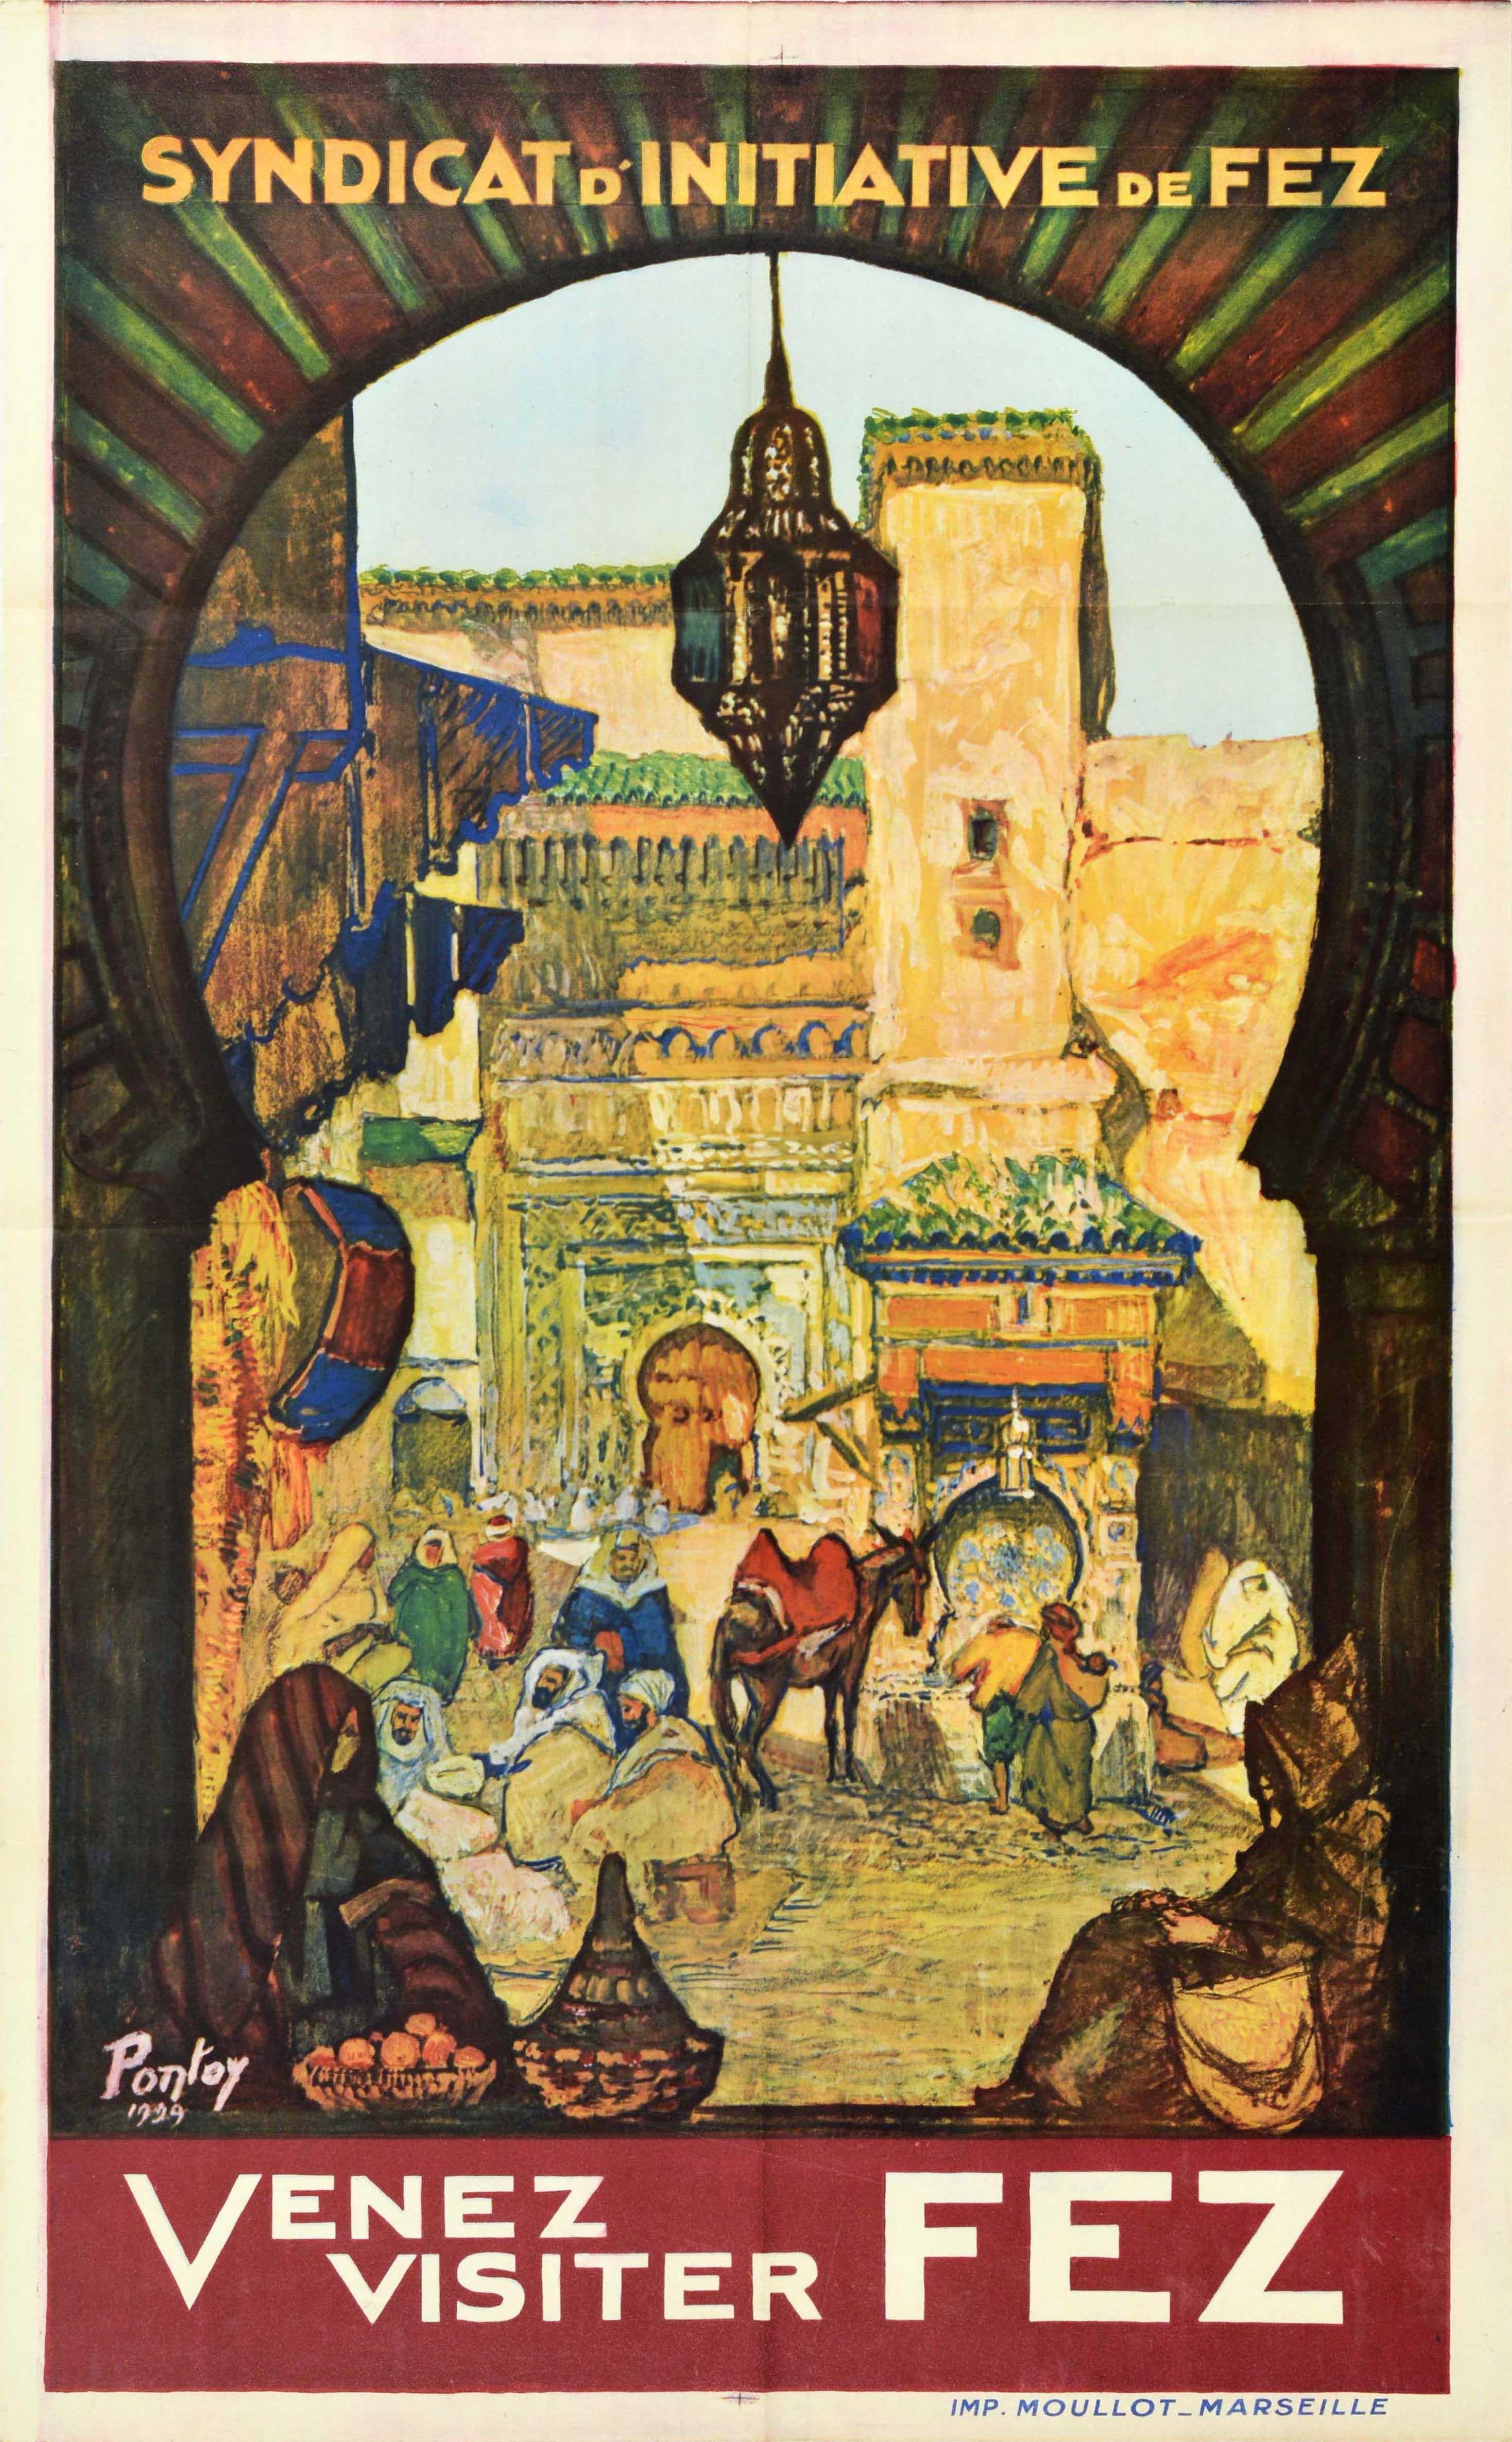 Pontoy Print - Original Vintage Travel Poster Come Visit Venez Visiter Fez Morocco North Africa